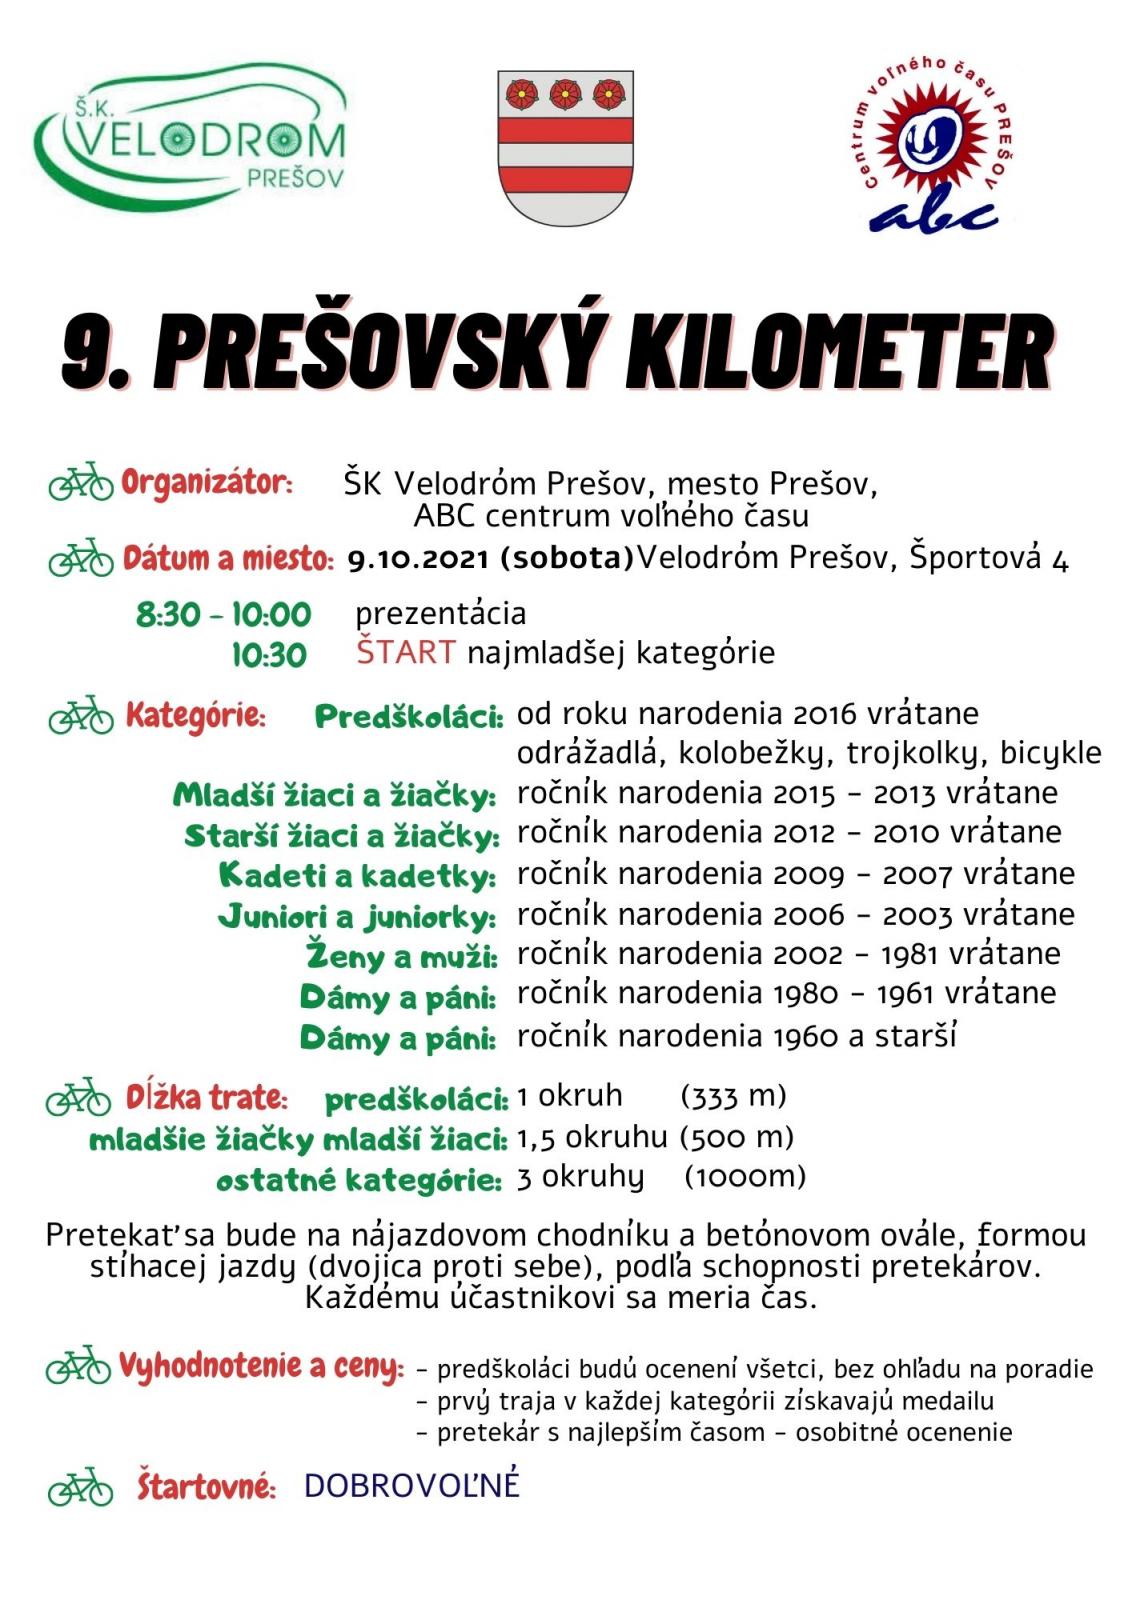 Štartuje Prešovský kilometer